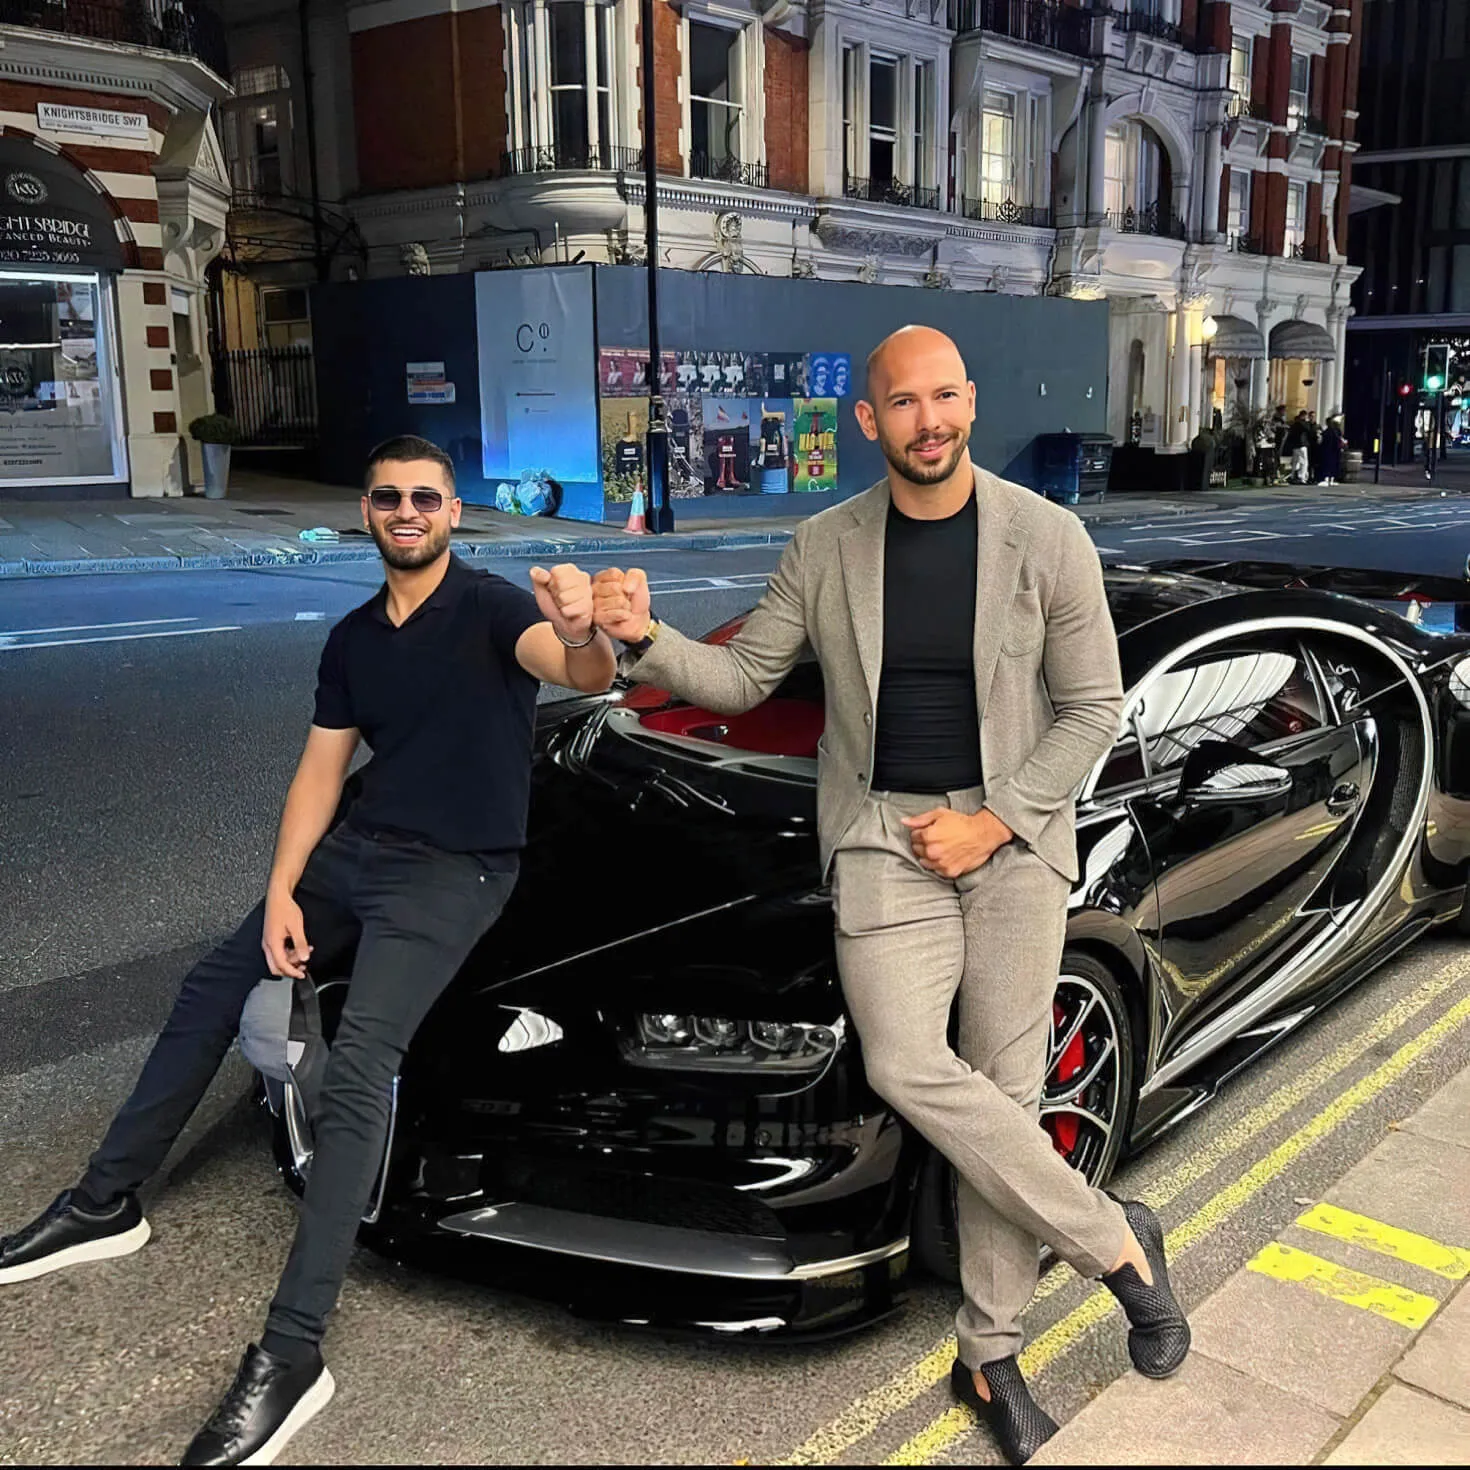 Tate with a friend and a Bugatti